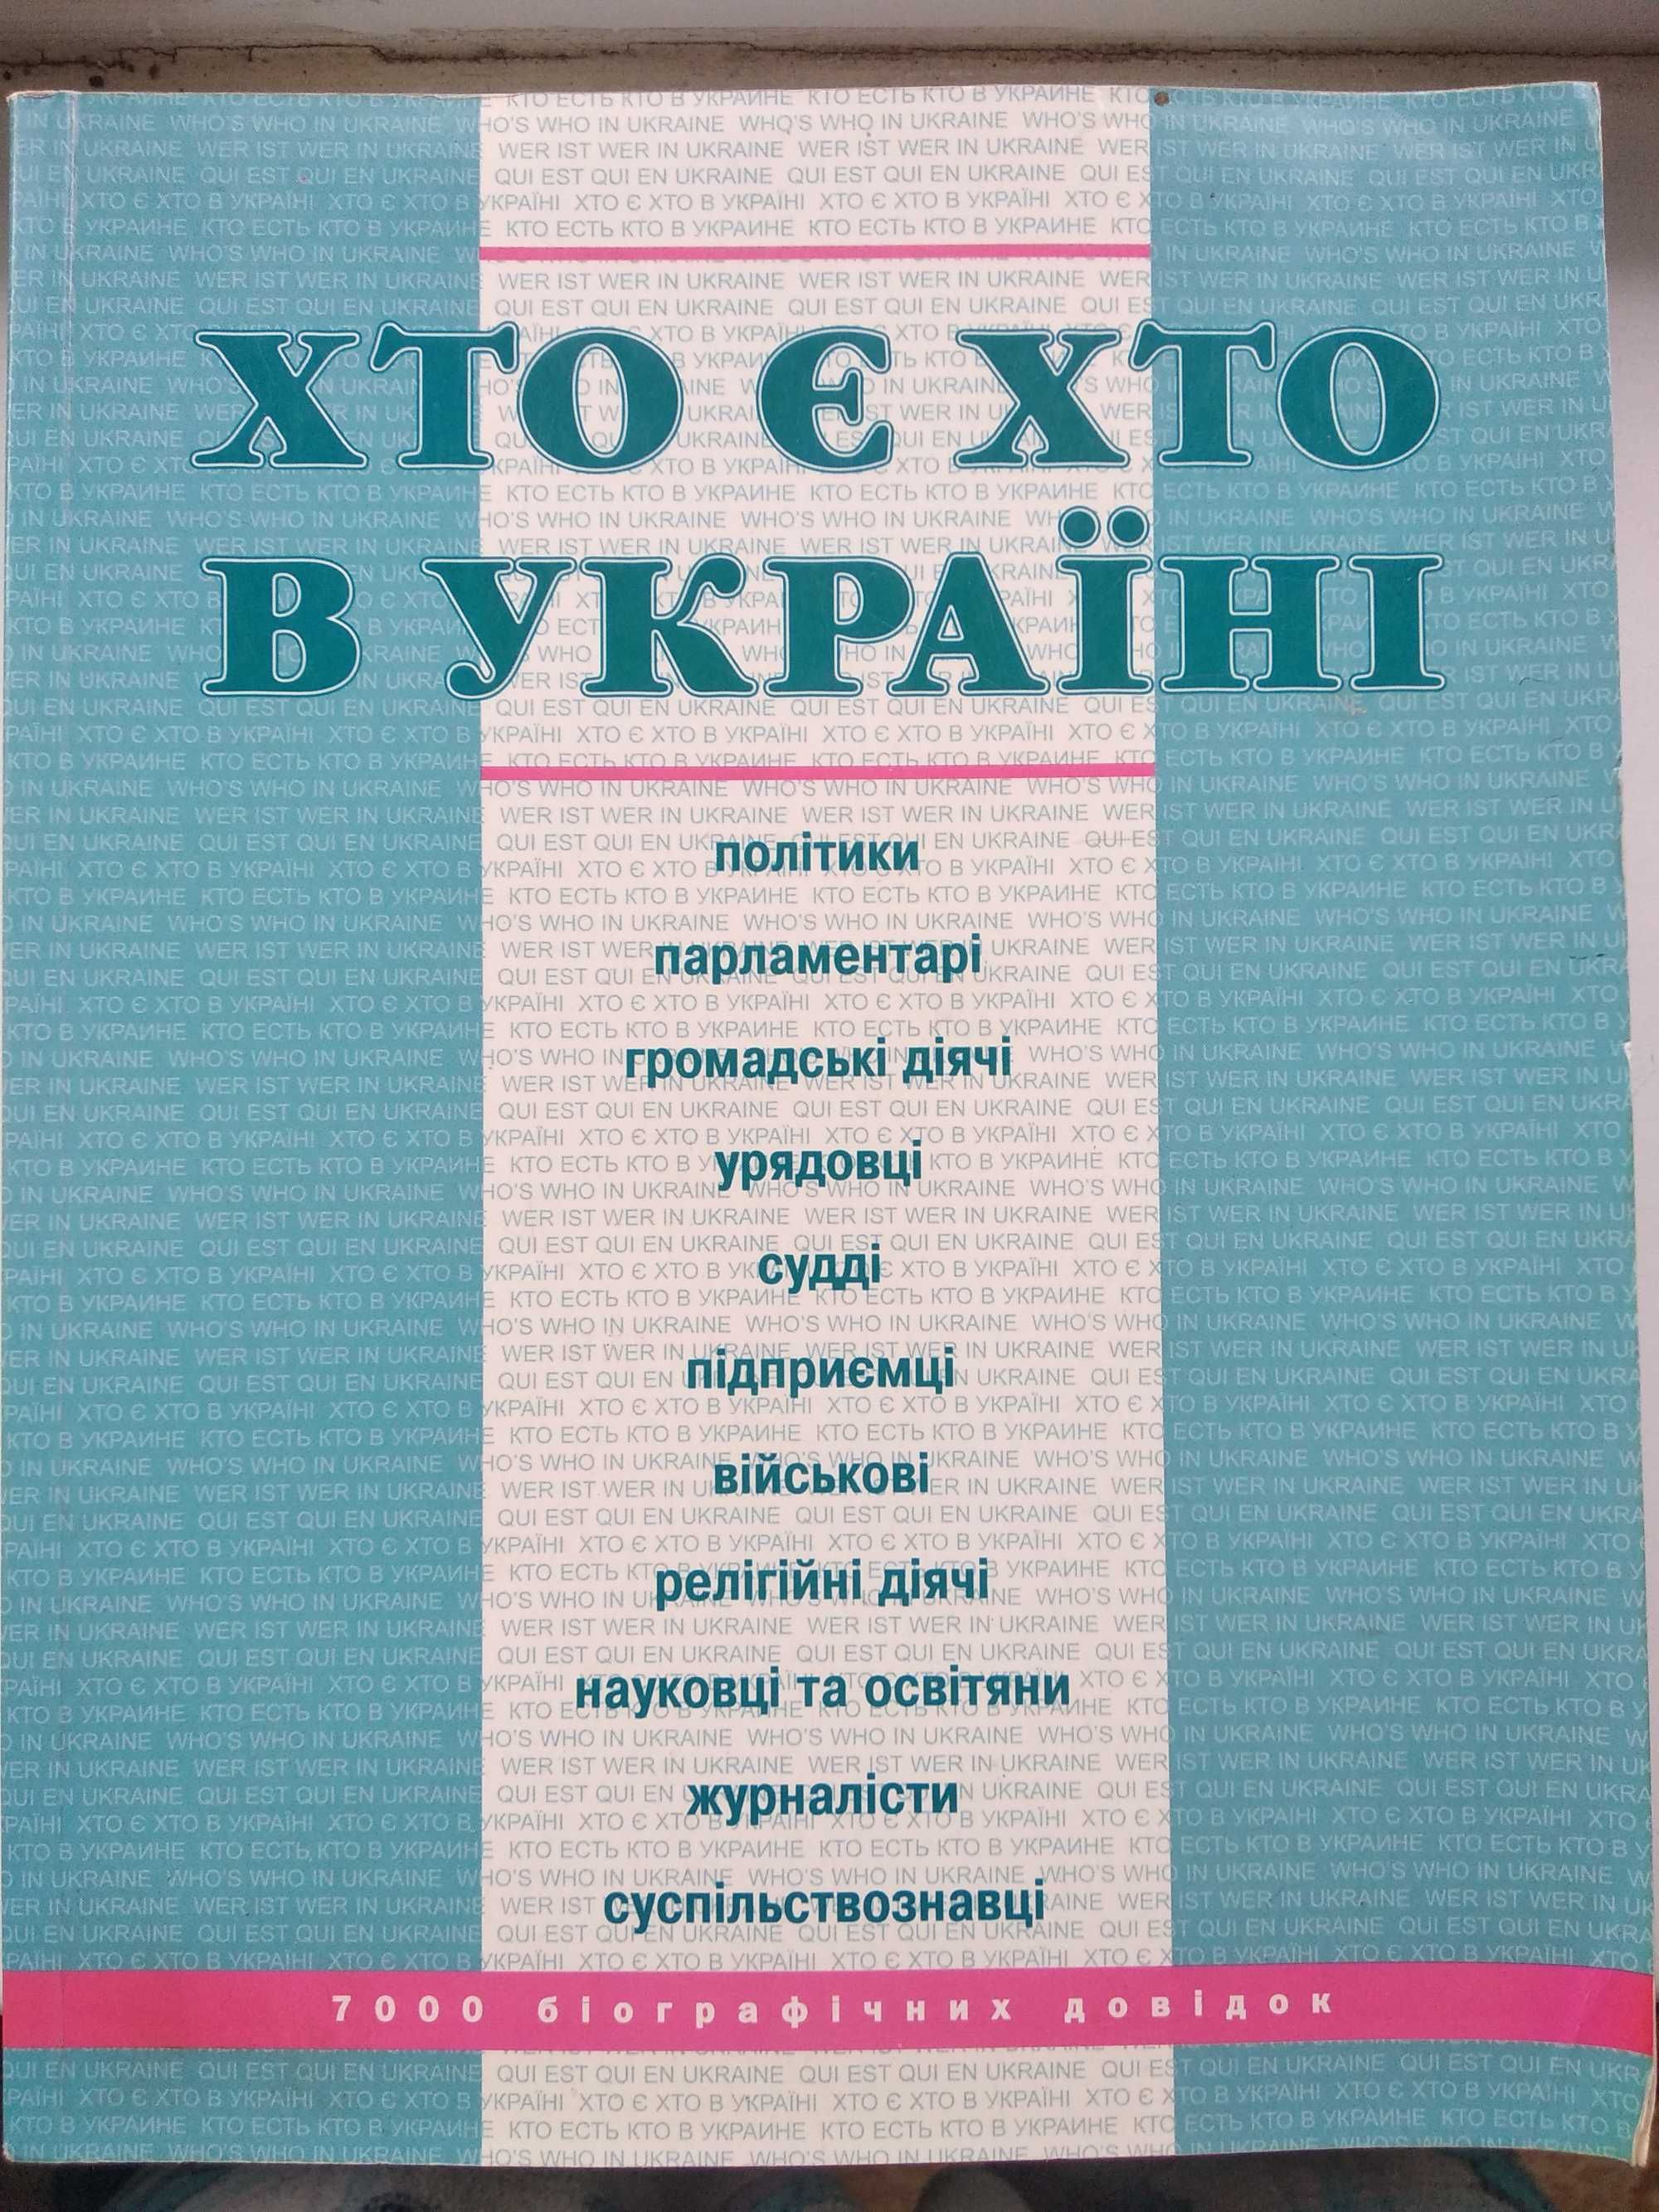 книга Хто є хто в Україні 7000 біографічних довідок вид. Кіс, 2004 р.